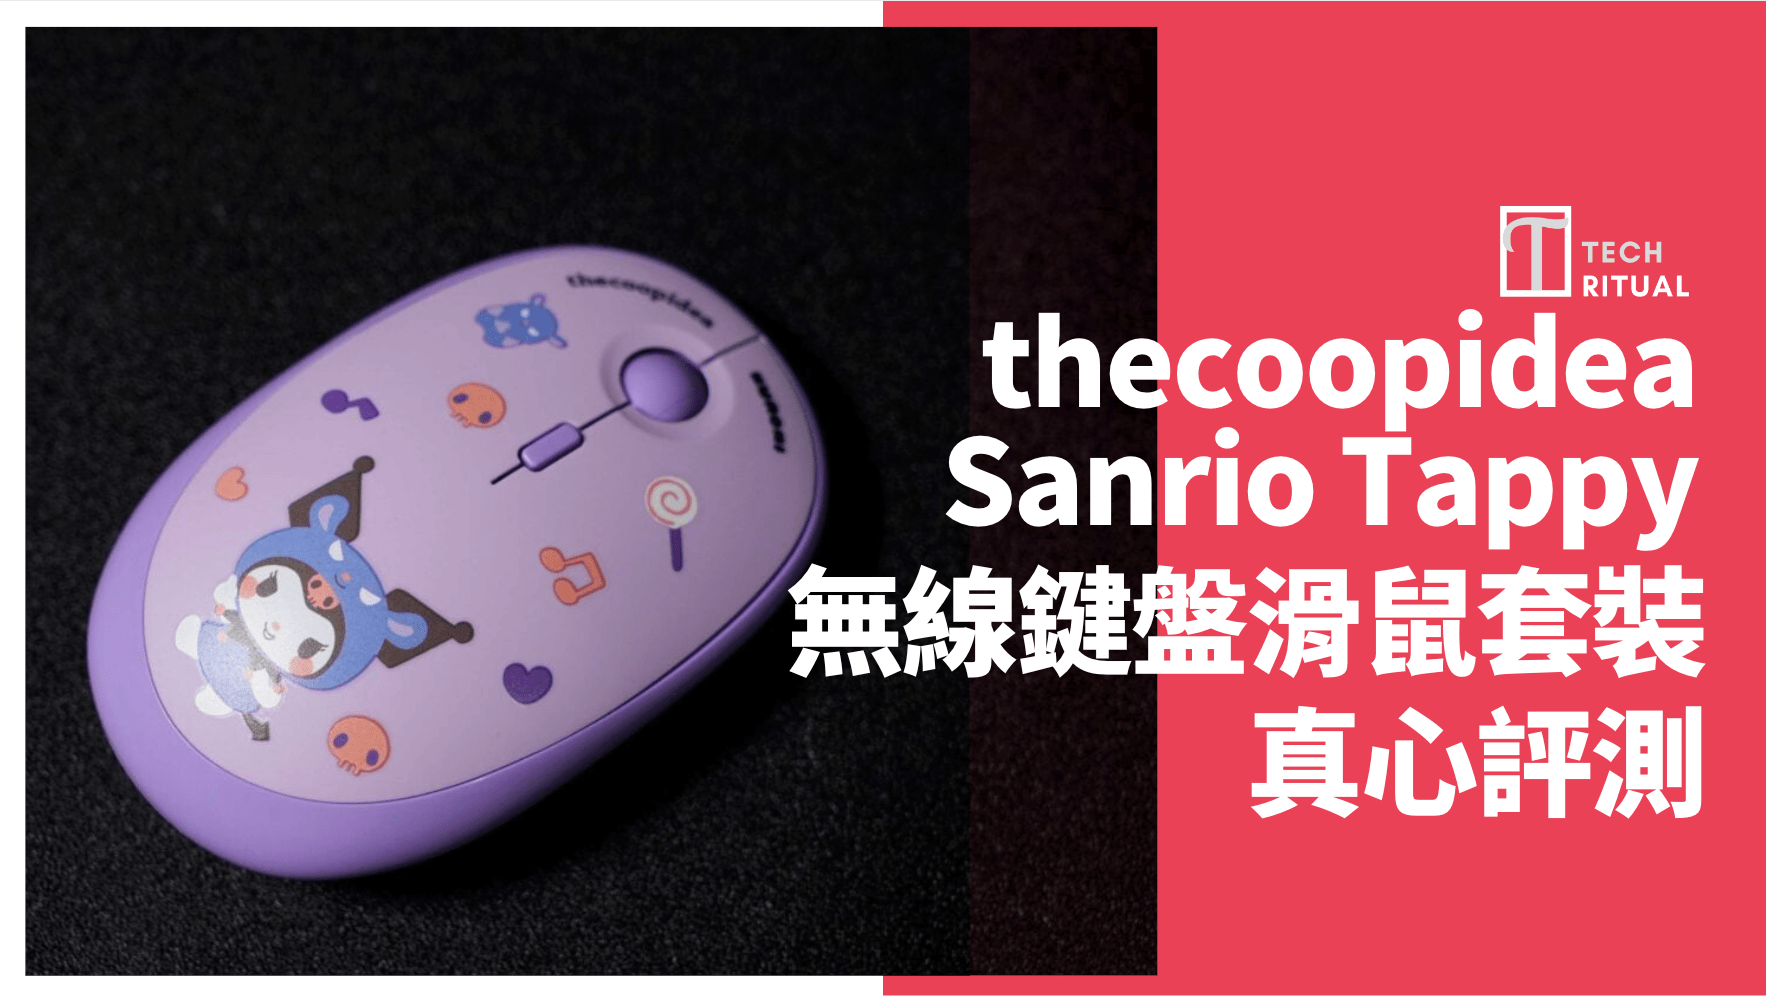 【開箱評測】thecoopidea x Sanrio Tappy+ 無線鍵盤滑鼠套裝，卡娃依呢 !!